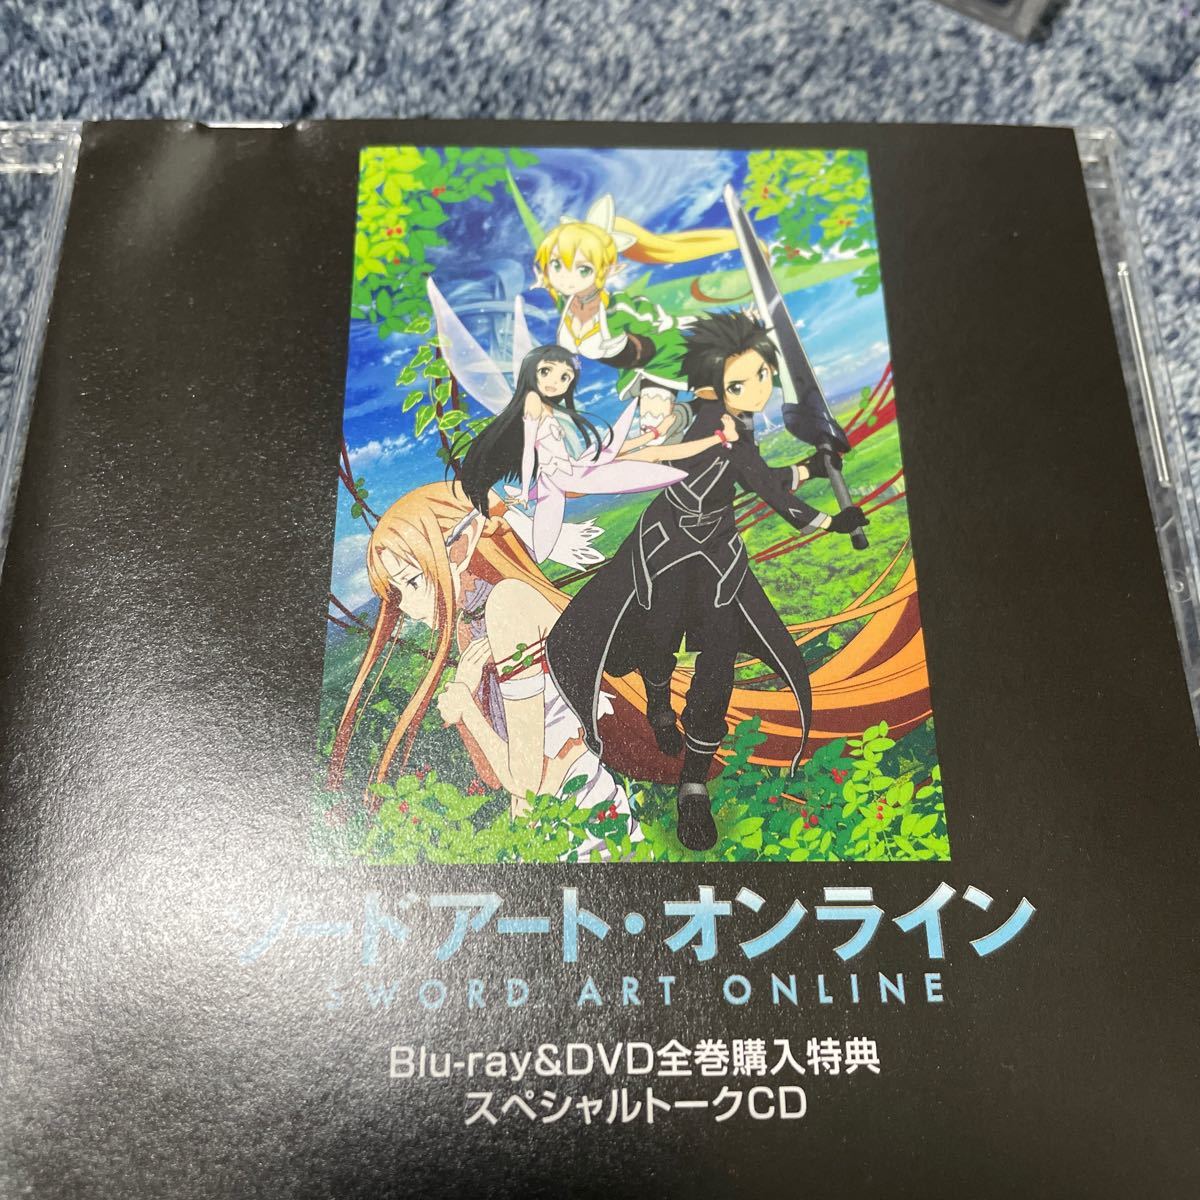 ソードアート・オンライン SPトークCD【Blu-ray/DVD全巻購入特典】